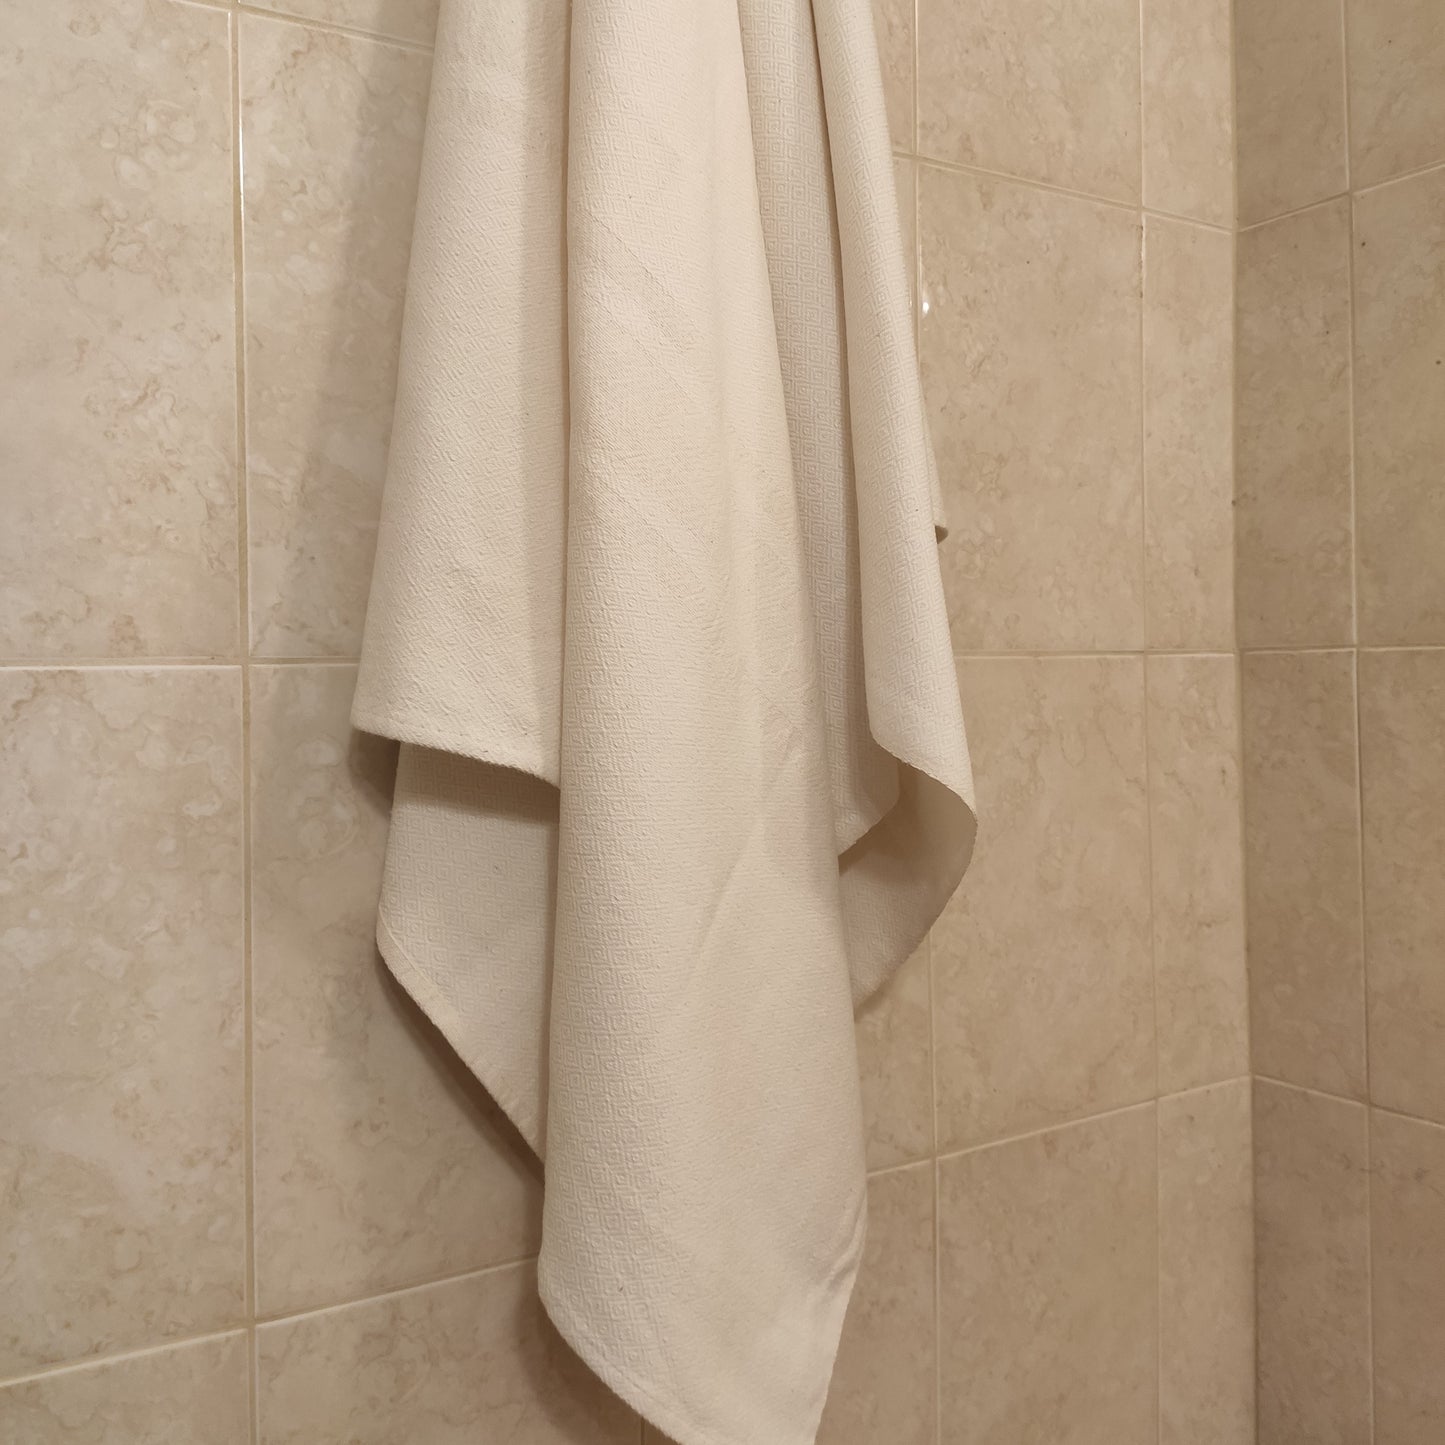 Hungary, Zsuzsa Zsigmond, Cotton towel with traditional Hungarian "barackmagos" motif